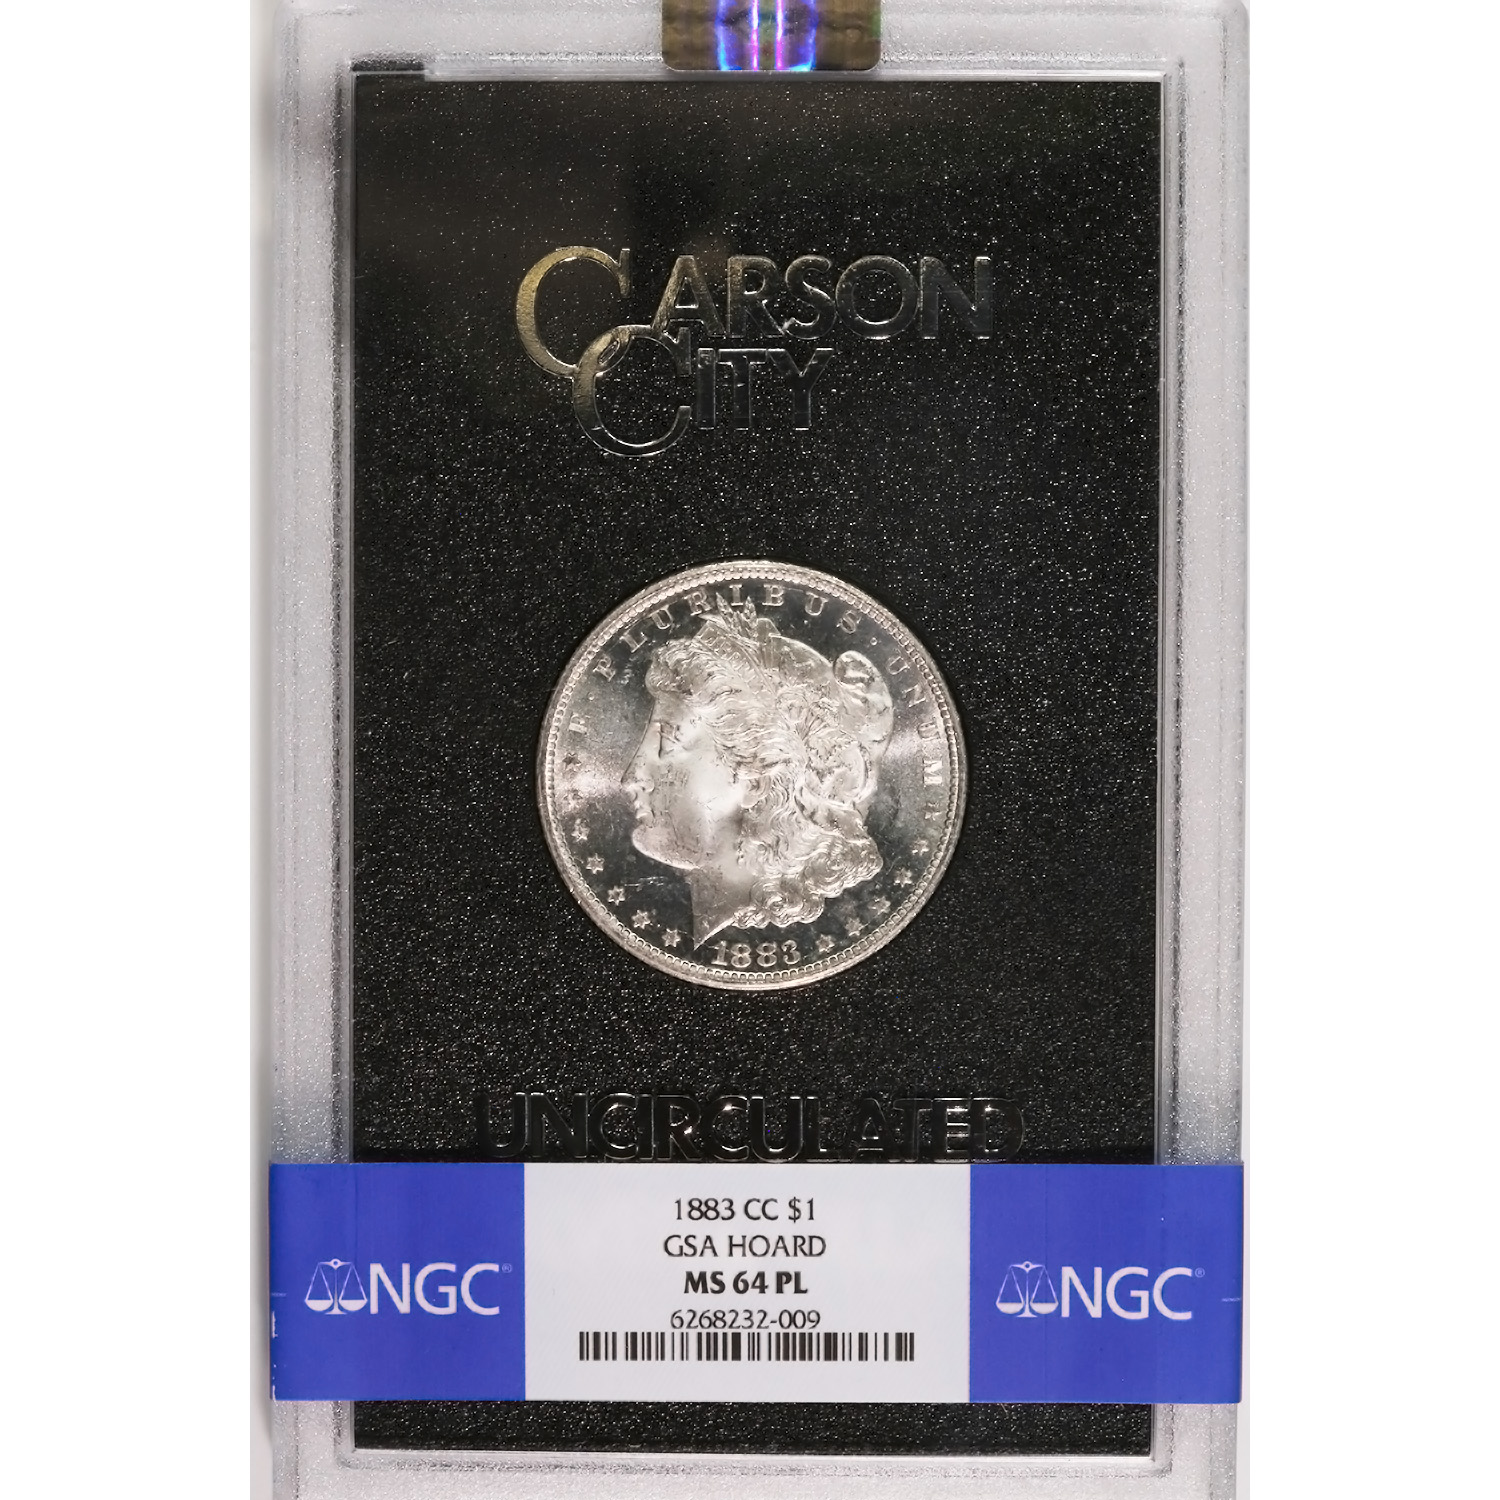 Carson City Morgan Silver Dollar 1883-CC GSA MS64PL NGC